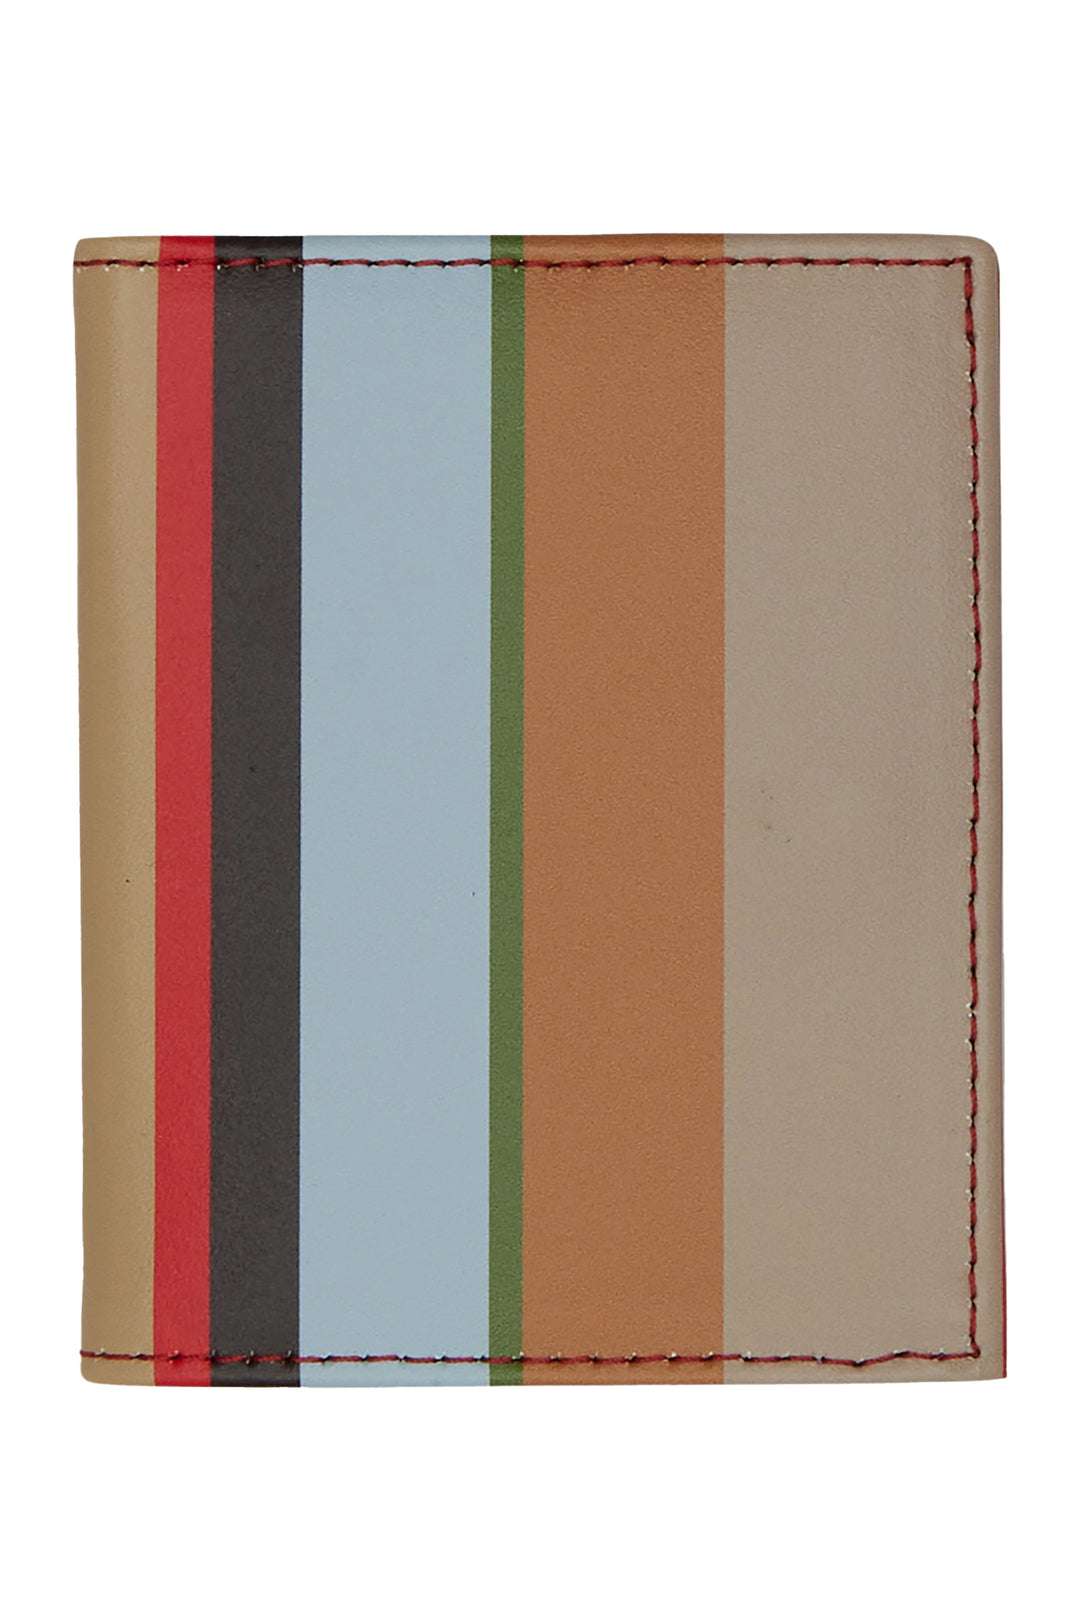 GALLO Portafoglio unisex pelle biscotto righe multicolor - Mancinelli 1954